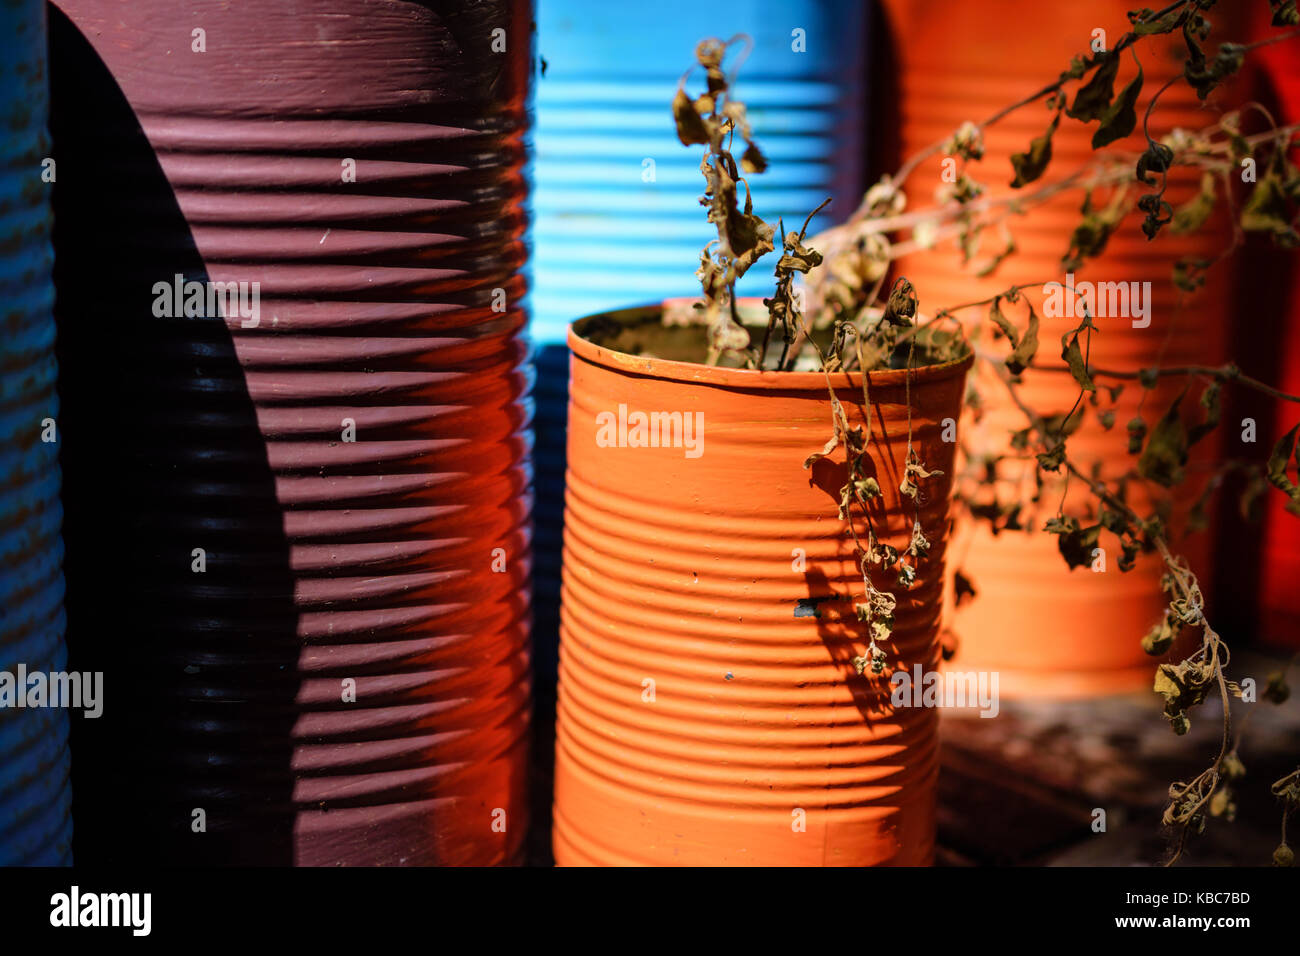 Ángulo de visión lateral de colores vibrantes de pintura naranja con plantas secas y bañarse en la luz del sol Foto de stock